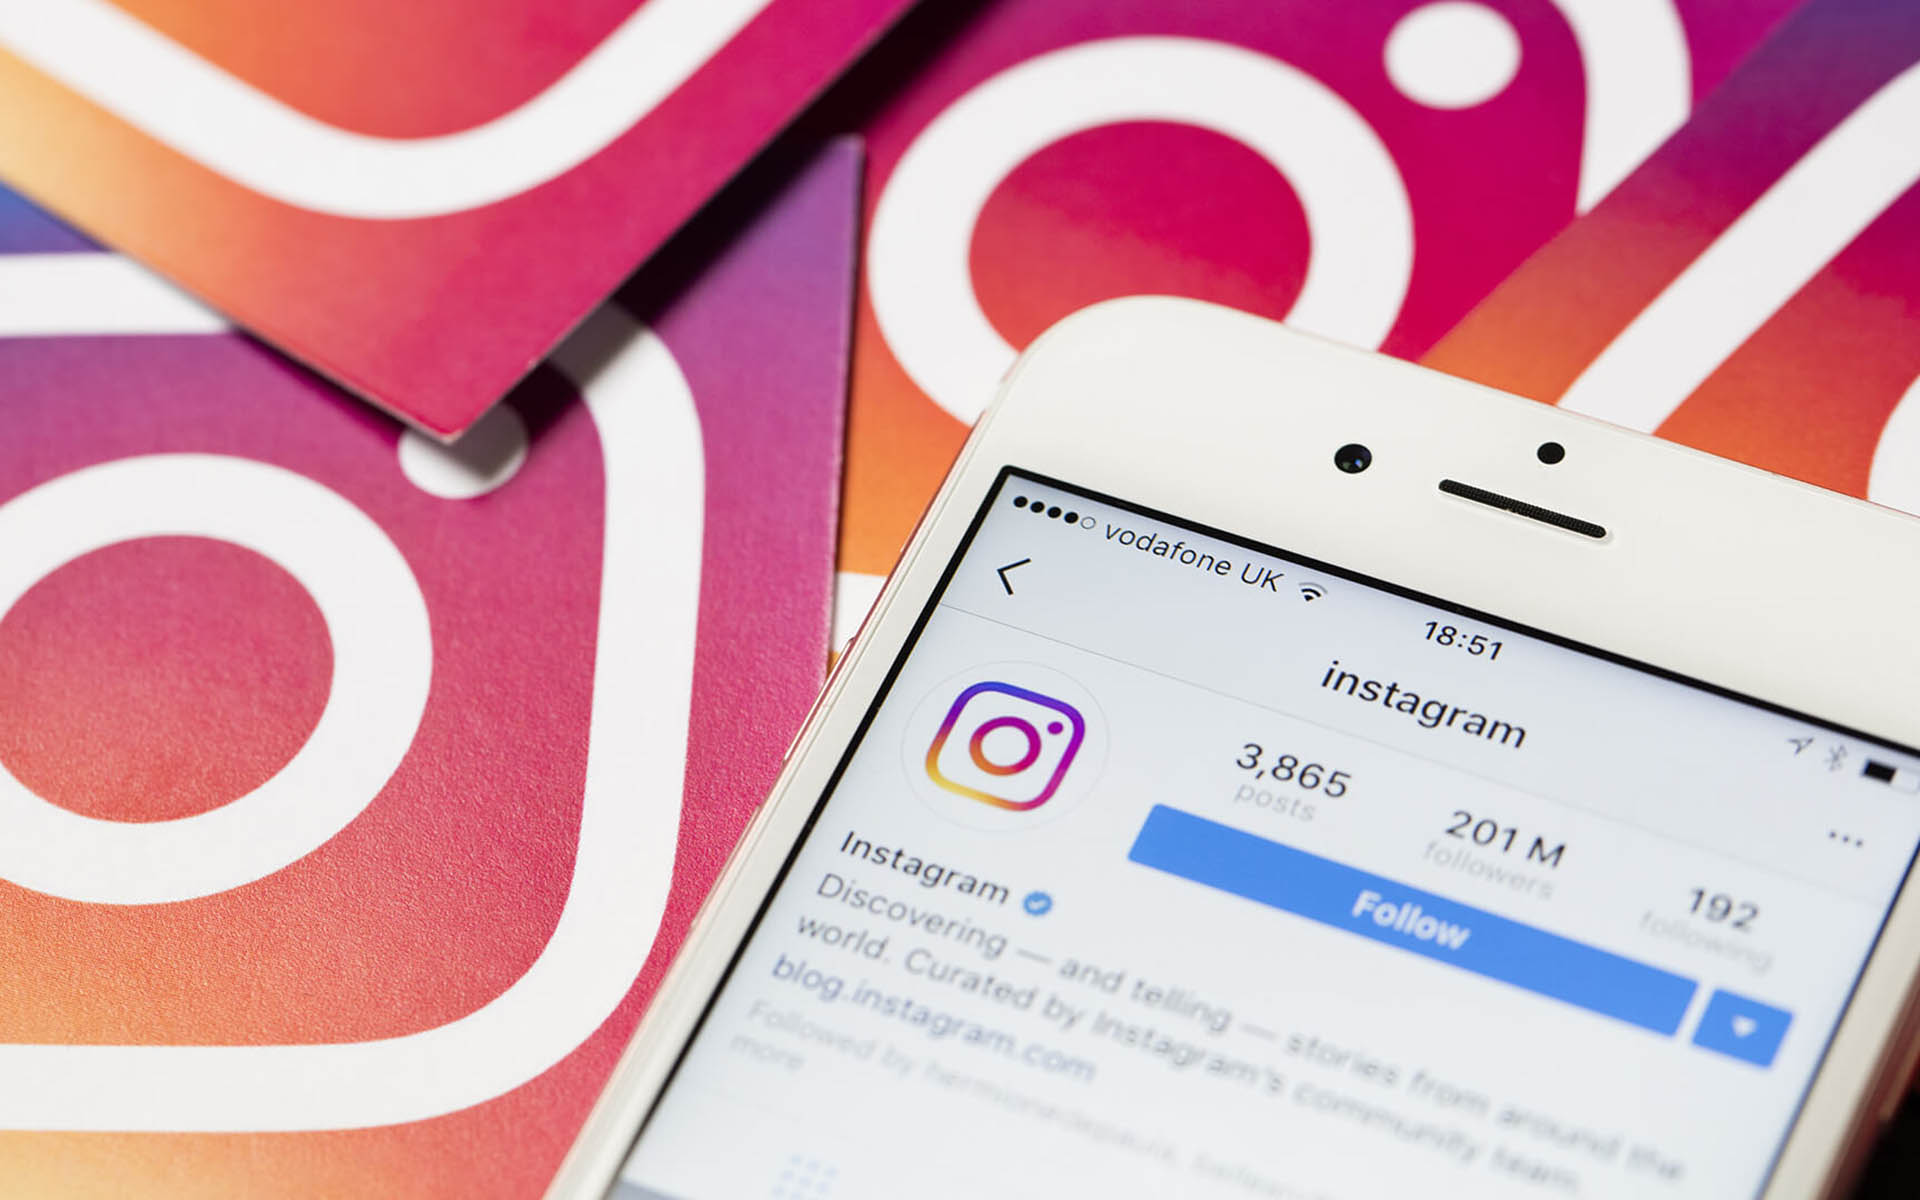 Si ta përdorim ndryshimin e ri që ka bërë Instagrami